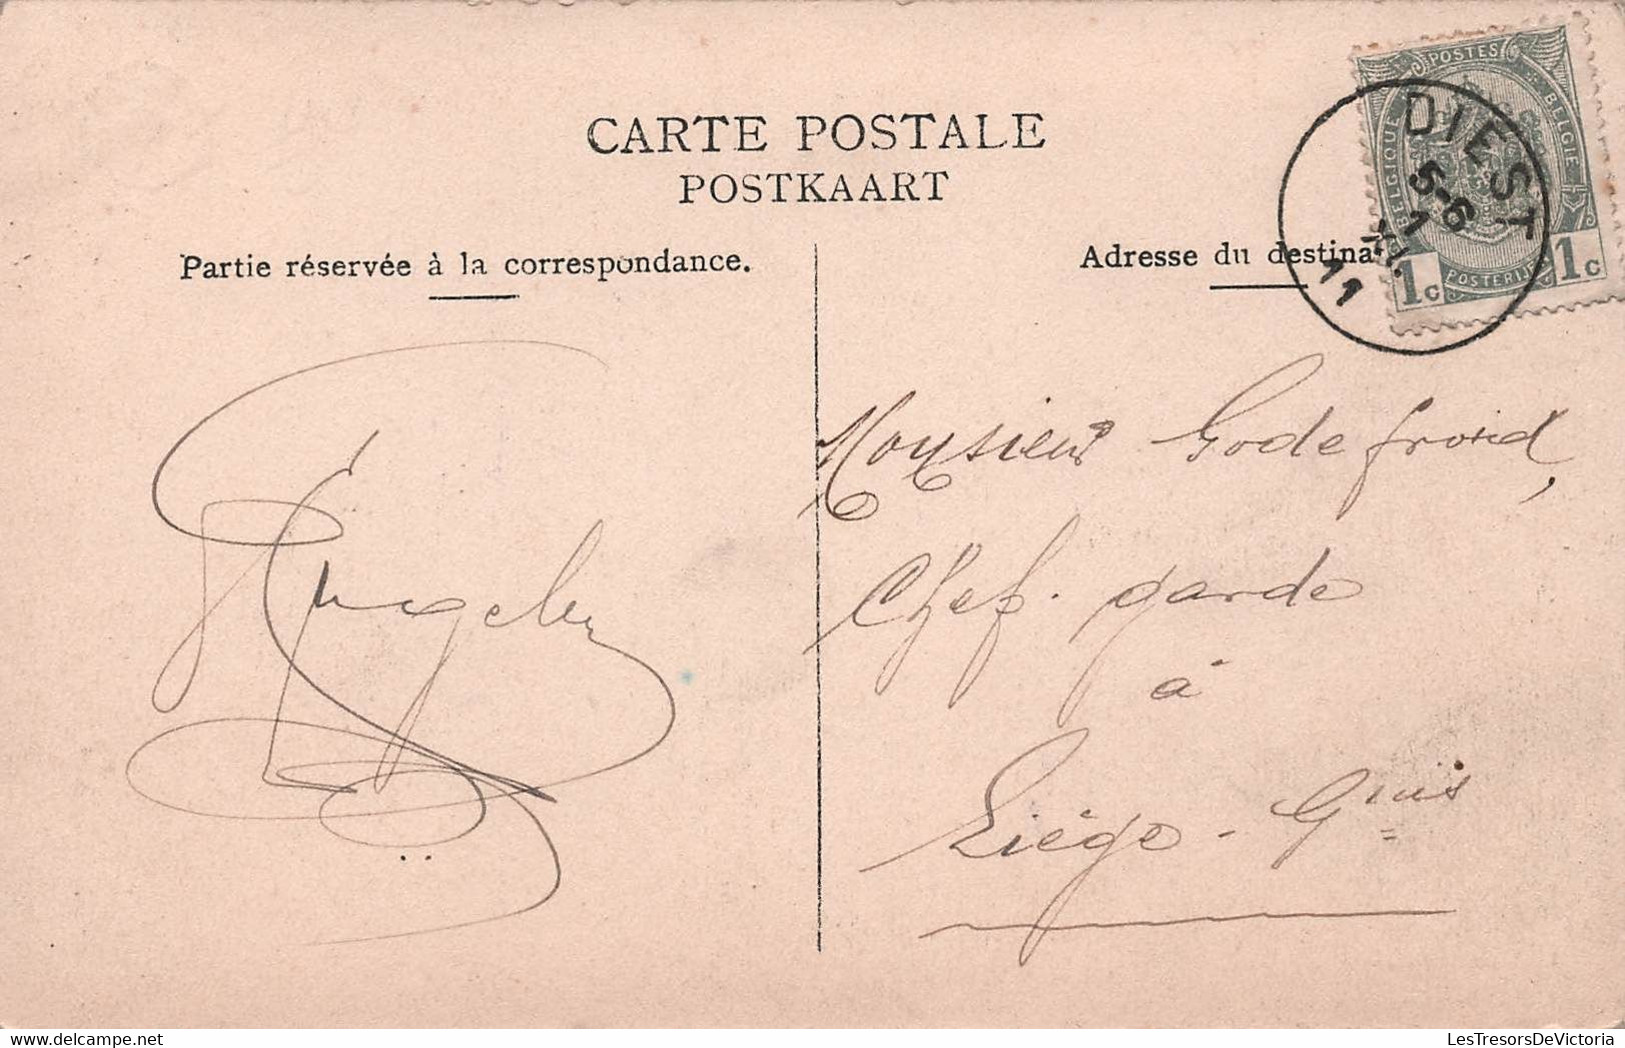 CPA Diest - La Gare - Chemin De Fer - Collection Bertels - Oblitéré A Diest En 1911 - Diest